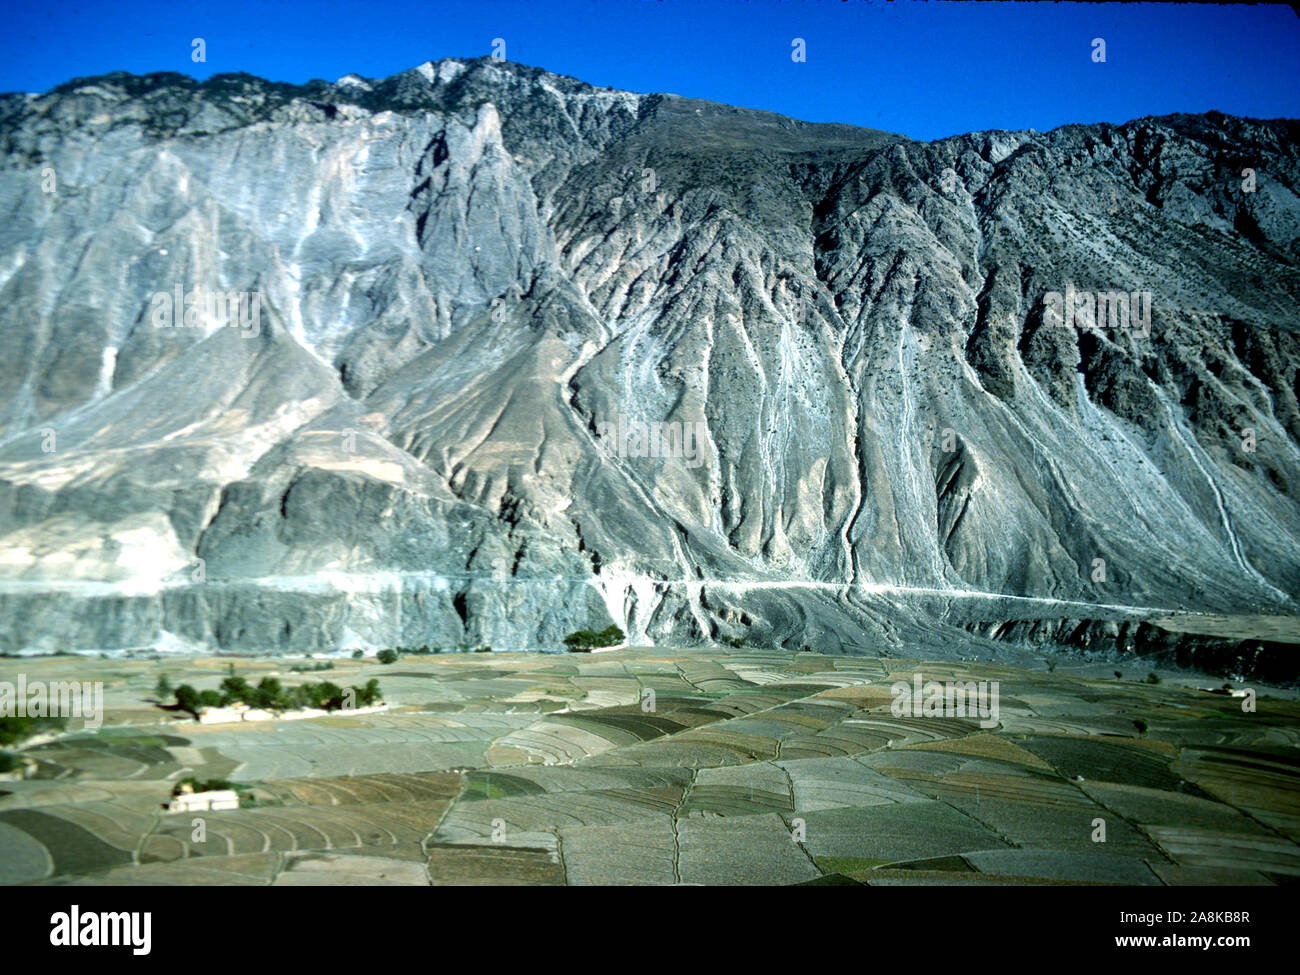 Die URSPRÜNGLICHE Seidenstraße am Fuße der Karakorum-Berge in der Gilgit-Region Nordgebiete Pakistans, 1980 Stockfoto